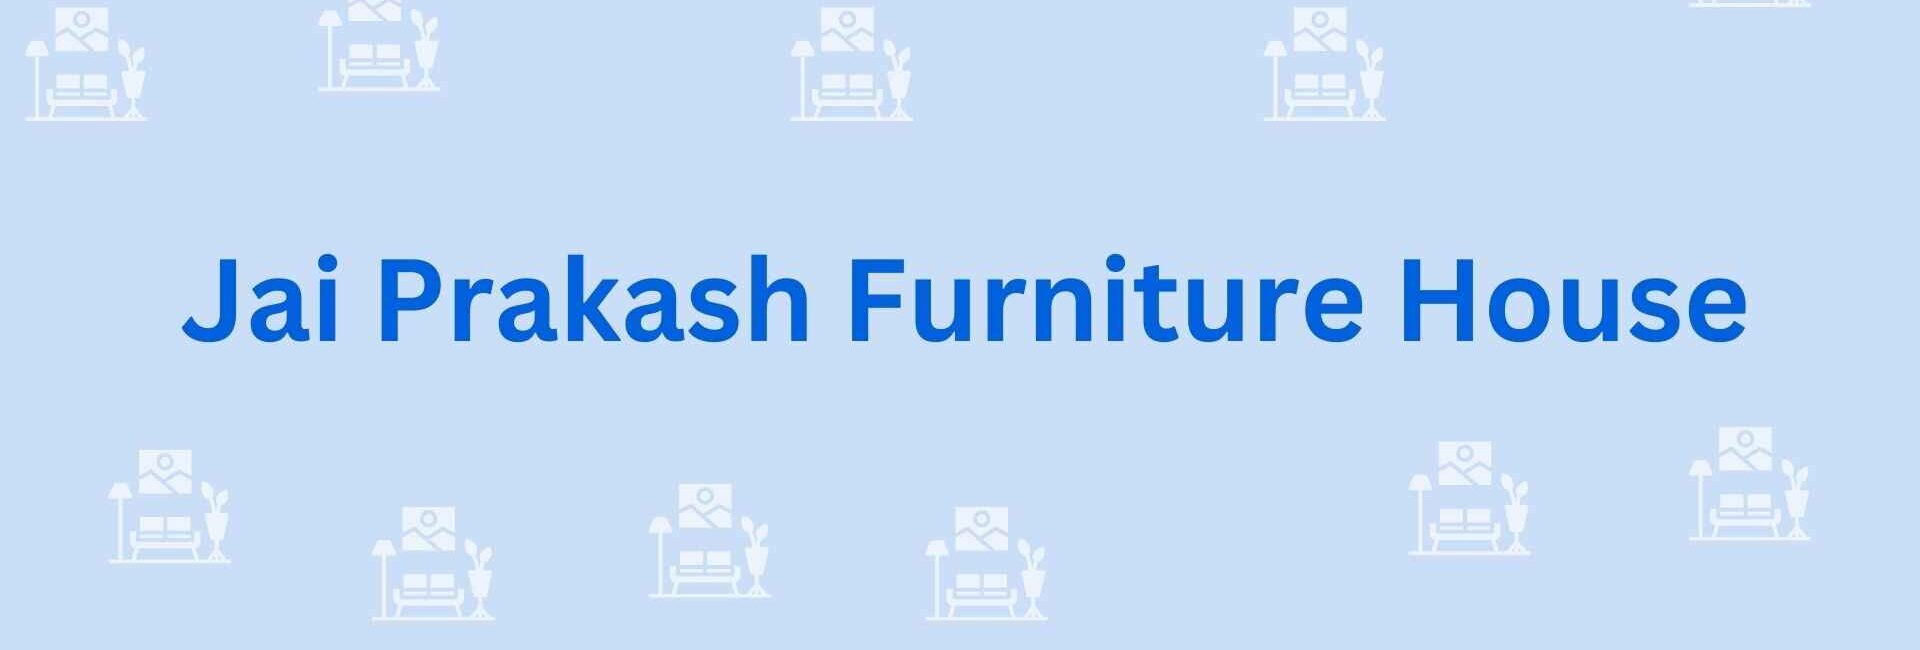 Jai Prakash Furniture House - Furniture Dealer in Noida